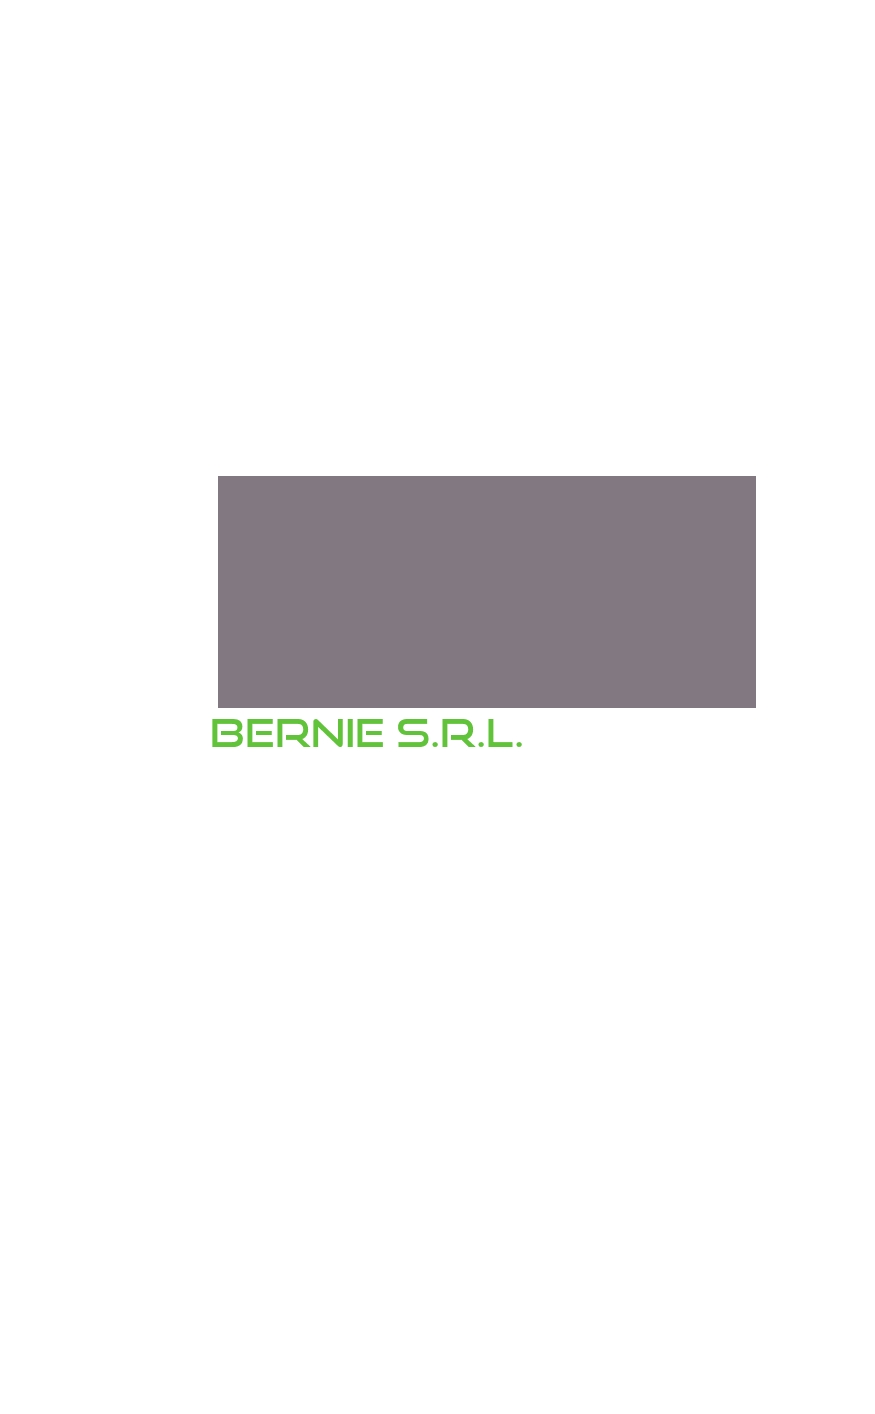 logo Bernie S.r.l.